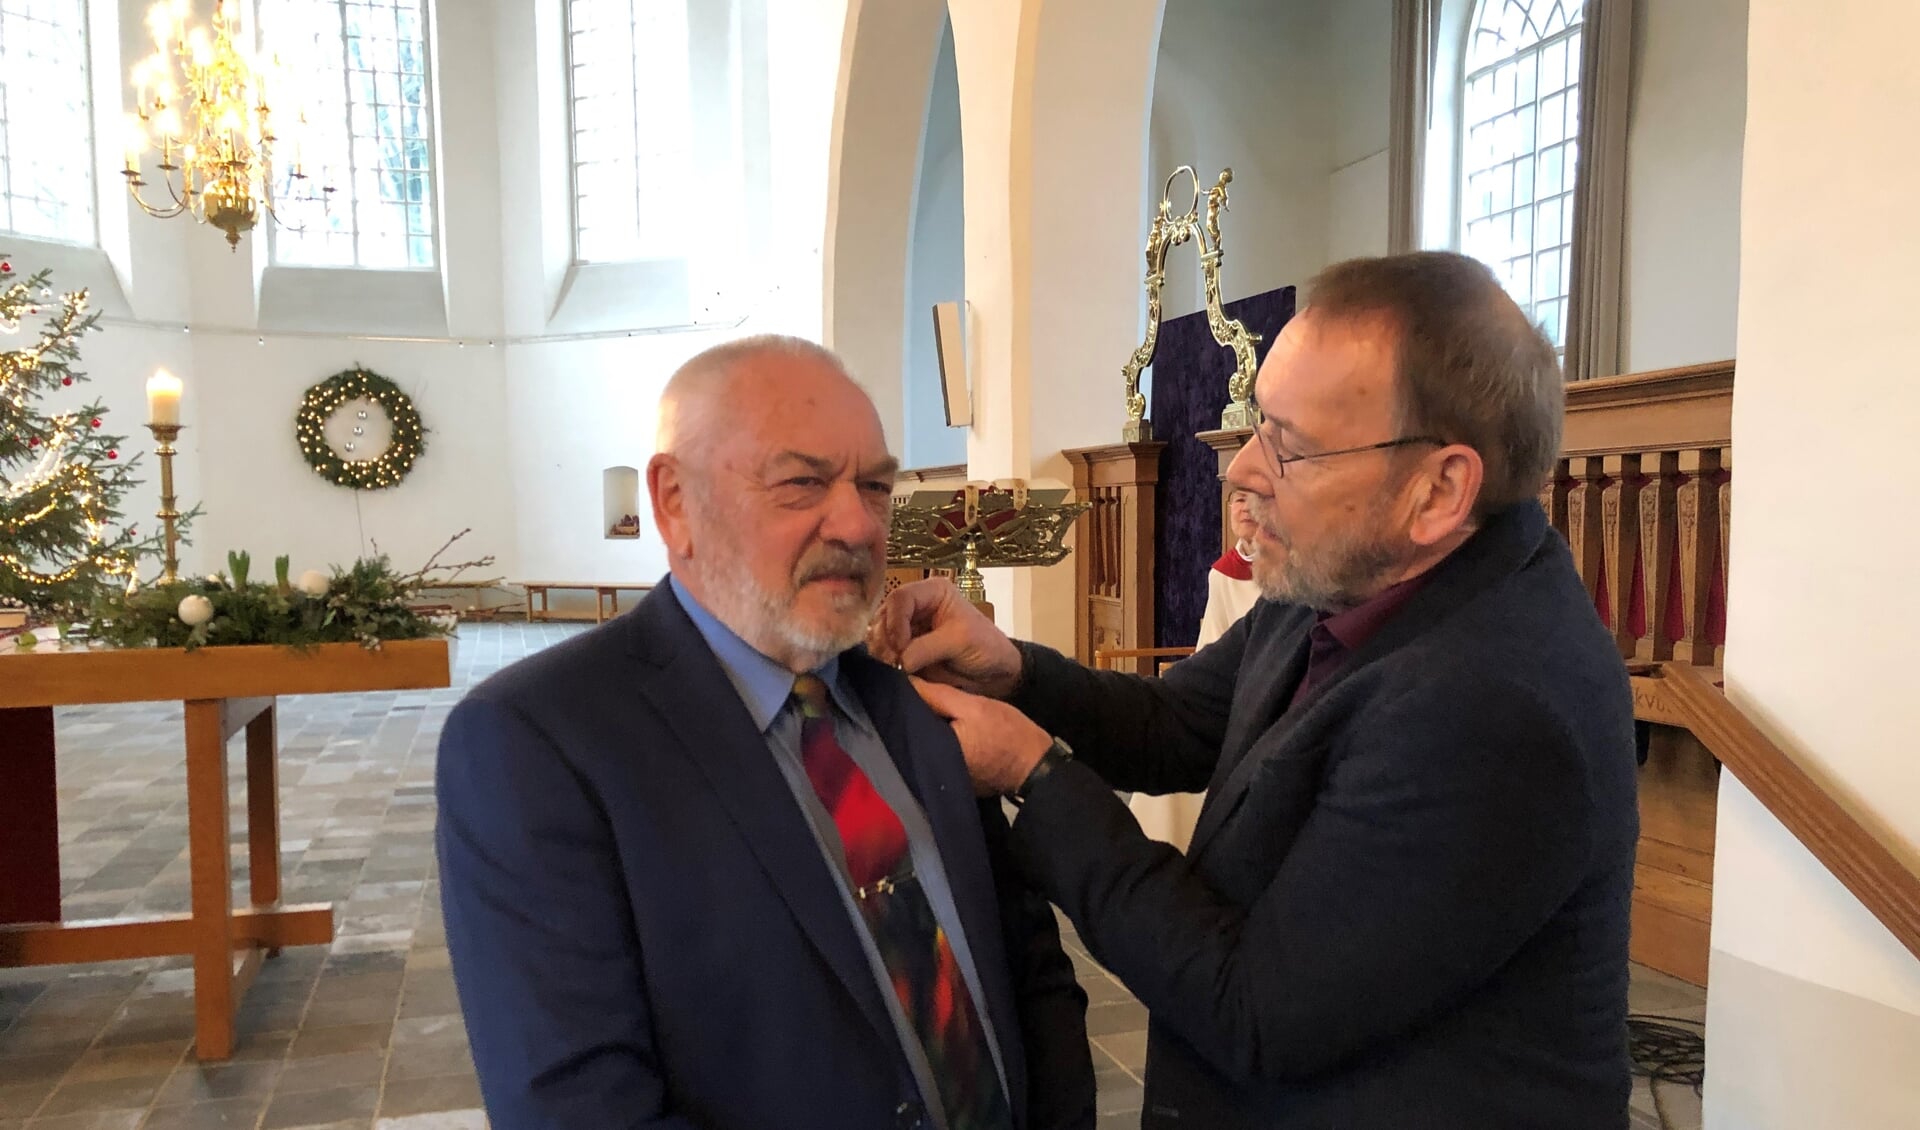 Riek Linde krijgt het draaginsigne in zilver van de Protestantse Kerk opgespeld door kerkrentmeester Luc van Asselt. Foto: PR